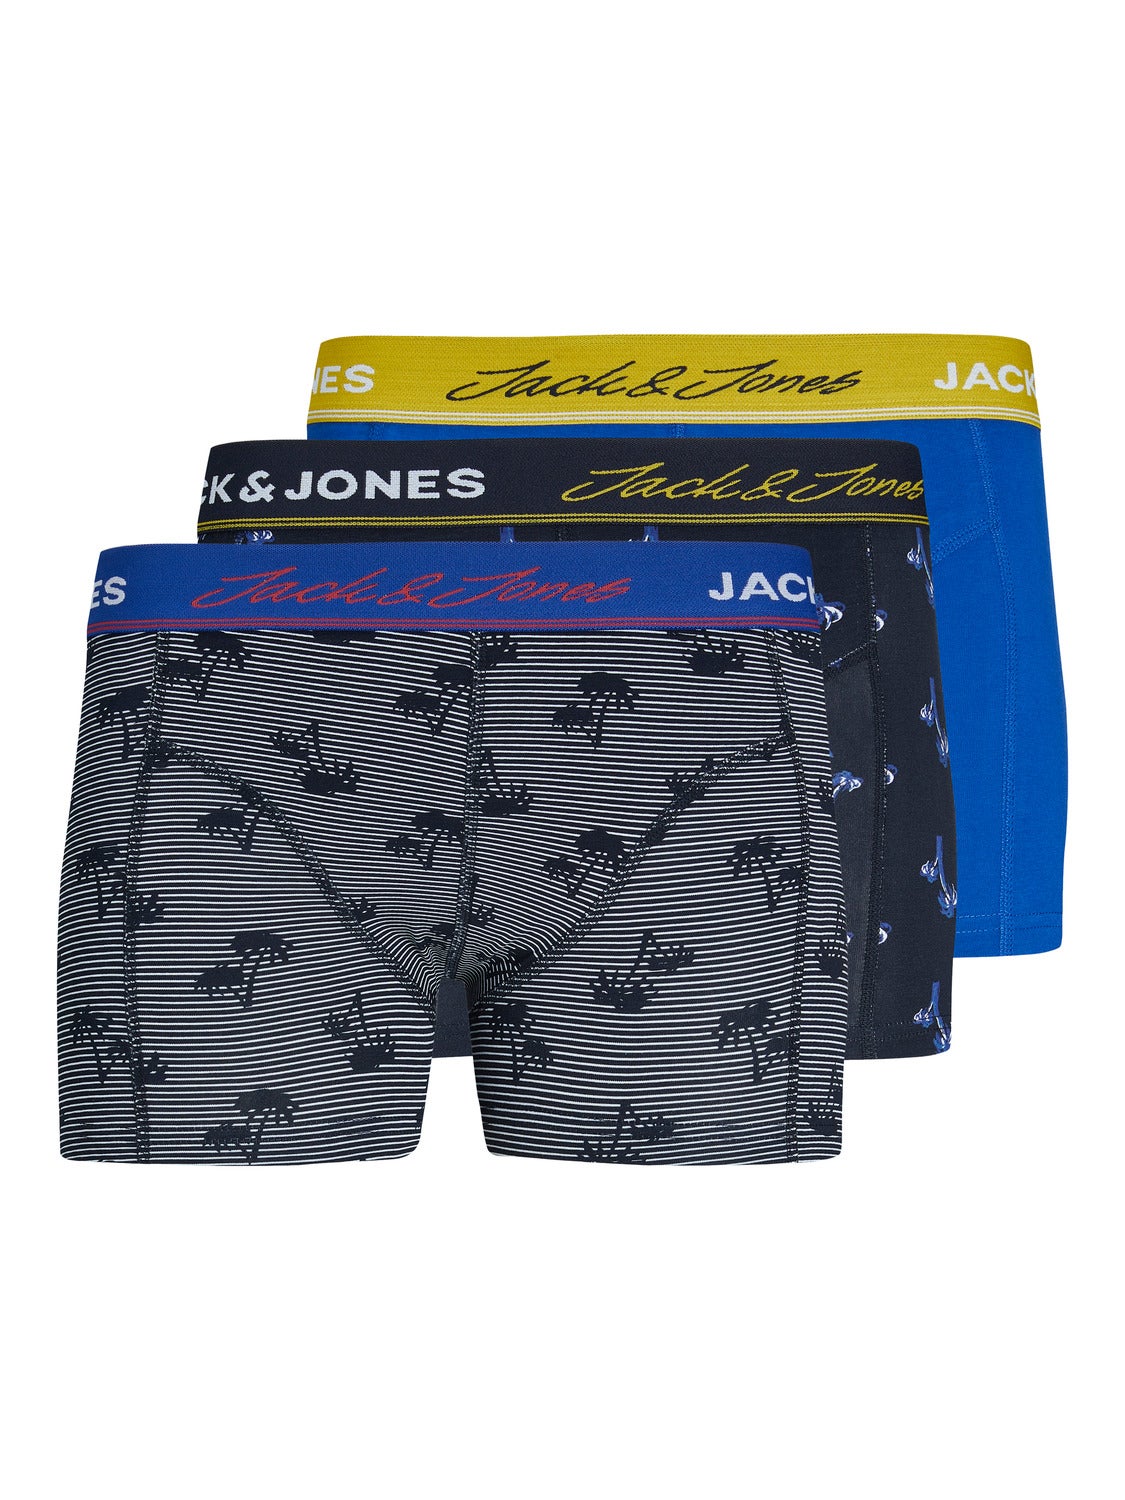 Multicolored Single Jack & Jones Socks discount 81% MEN FASHION Underwear & Nightwear 